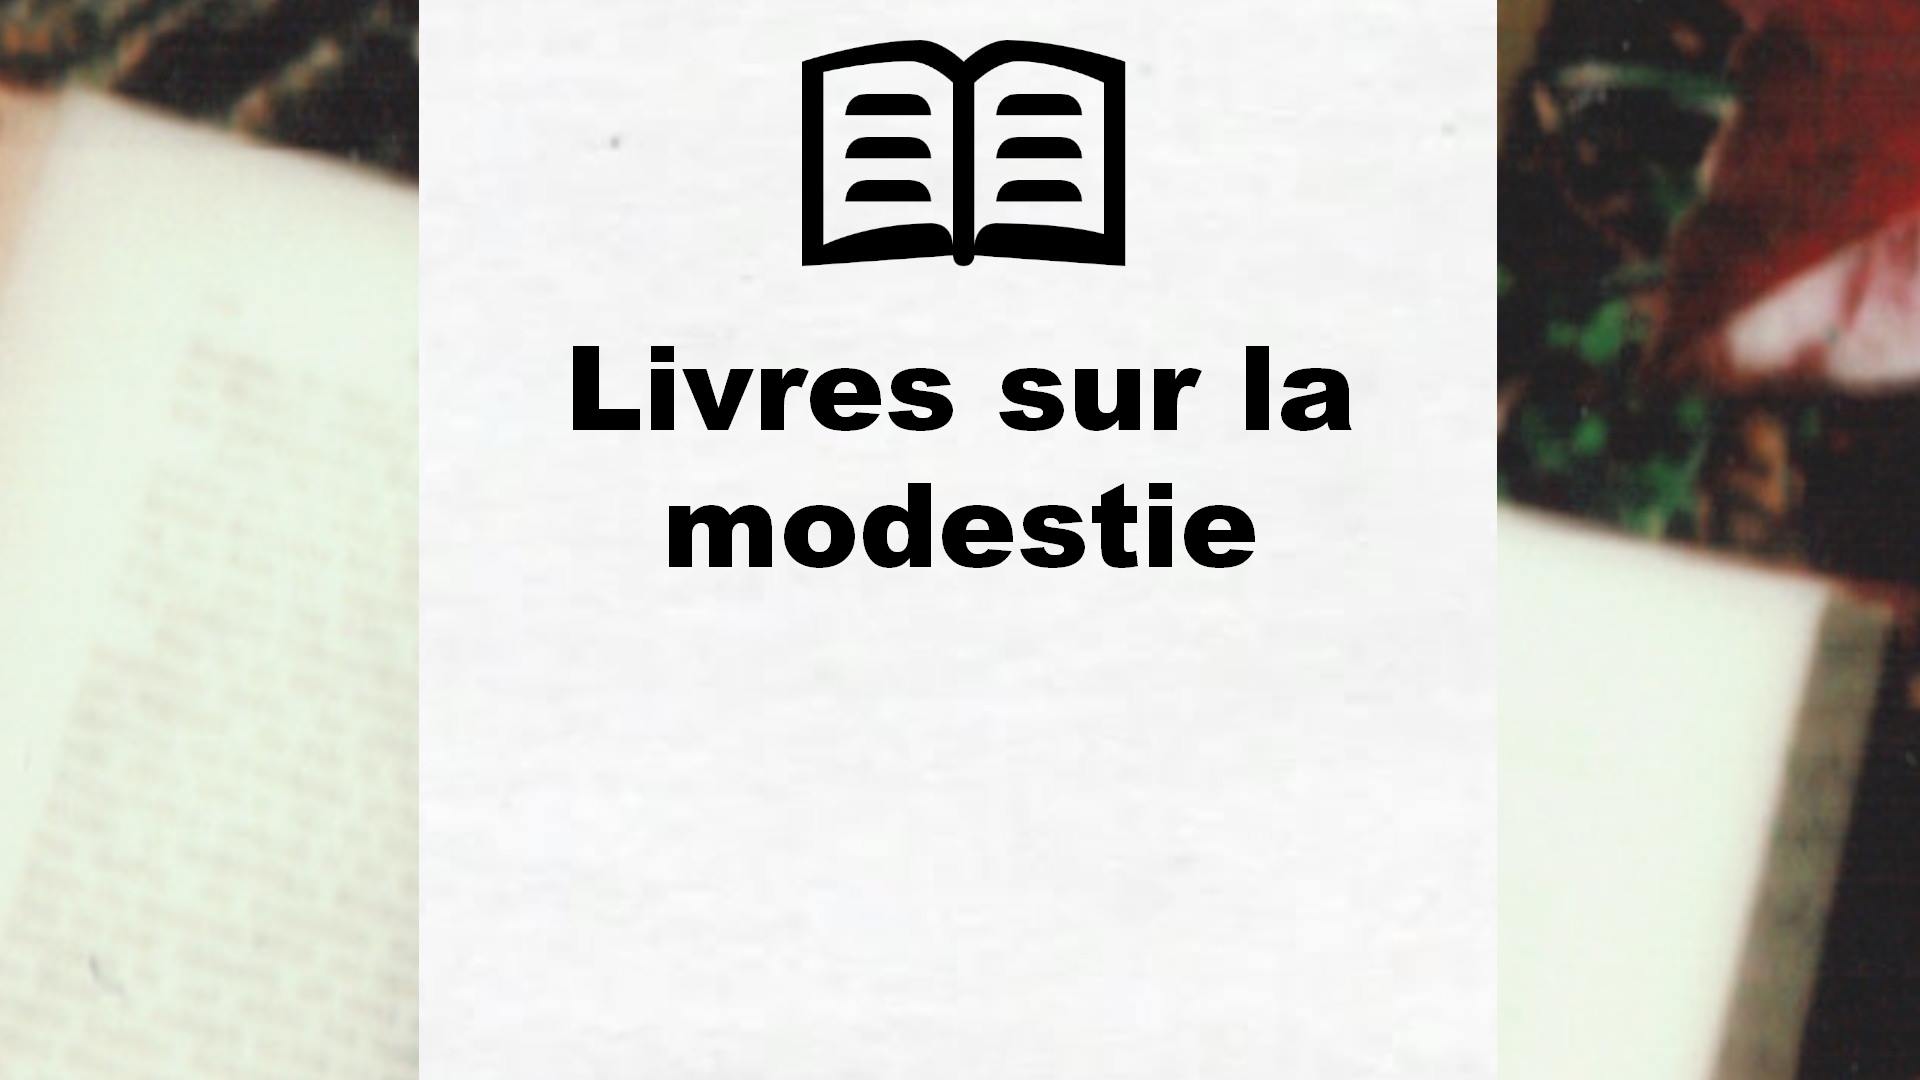 Livres sur la modestie